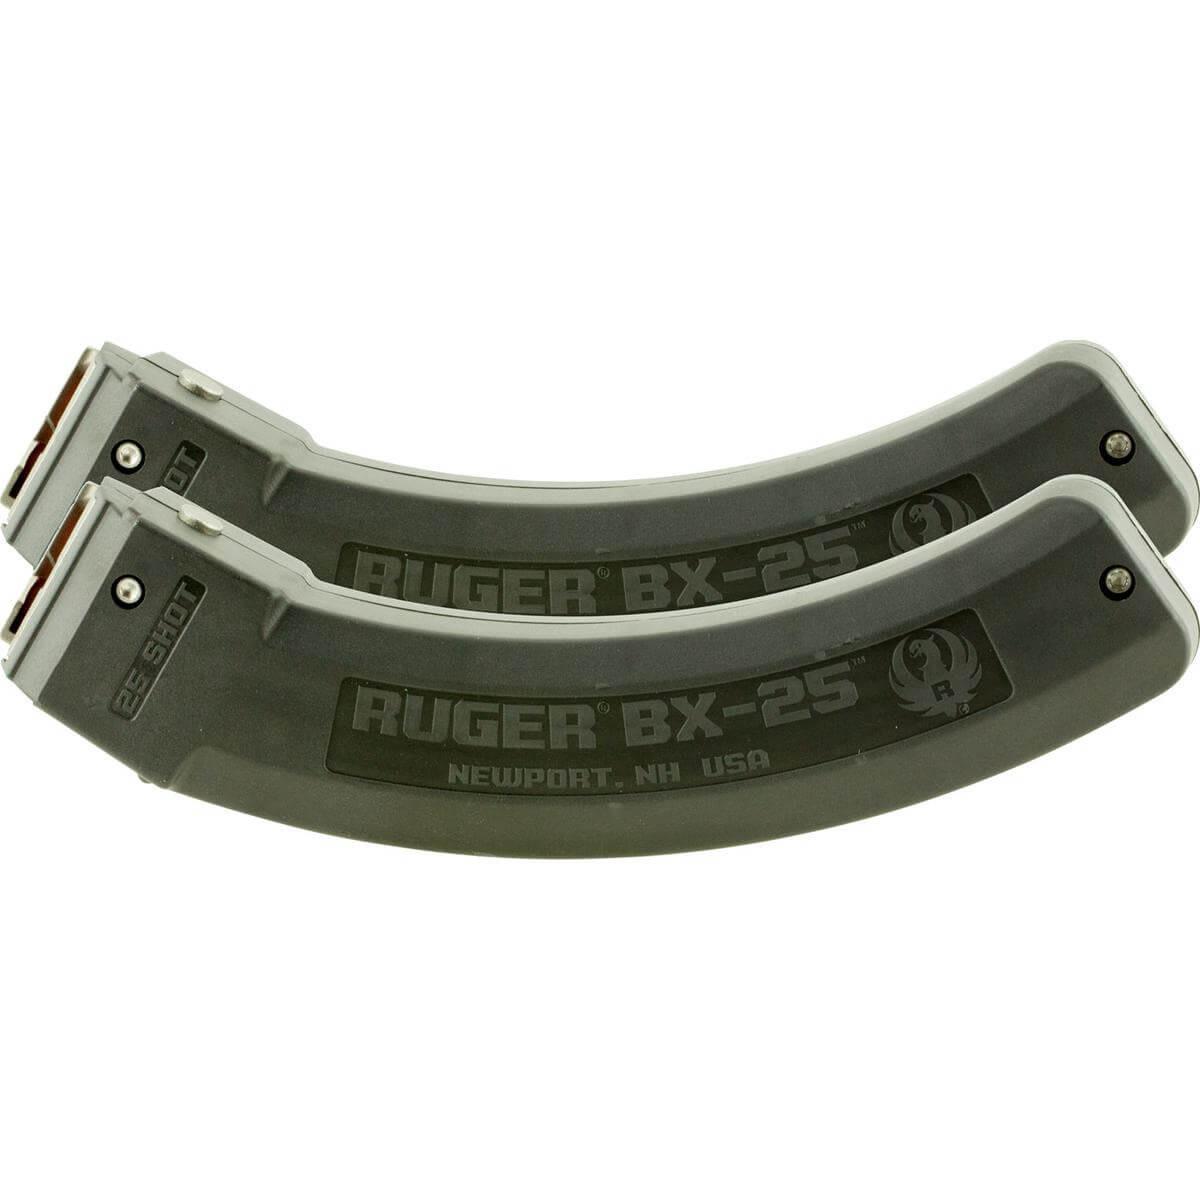 Carregador Rifle Ruger® BX-25 Calibre 22LR